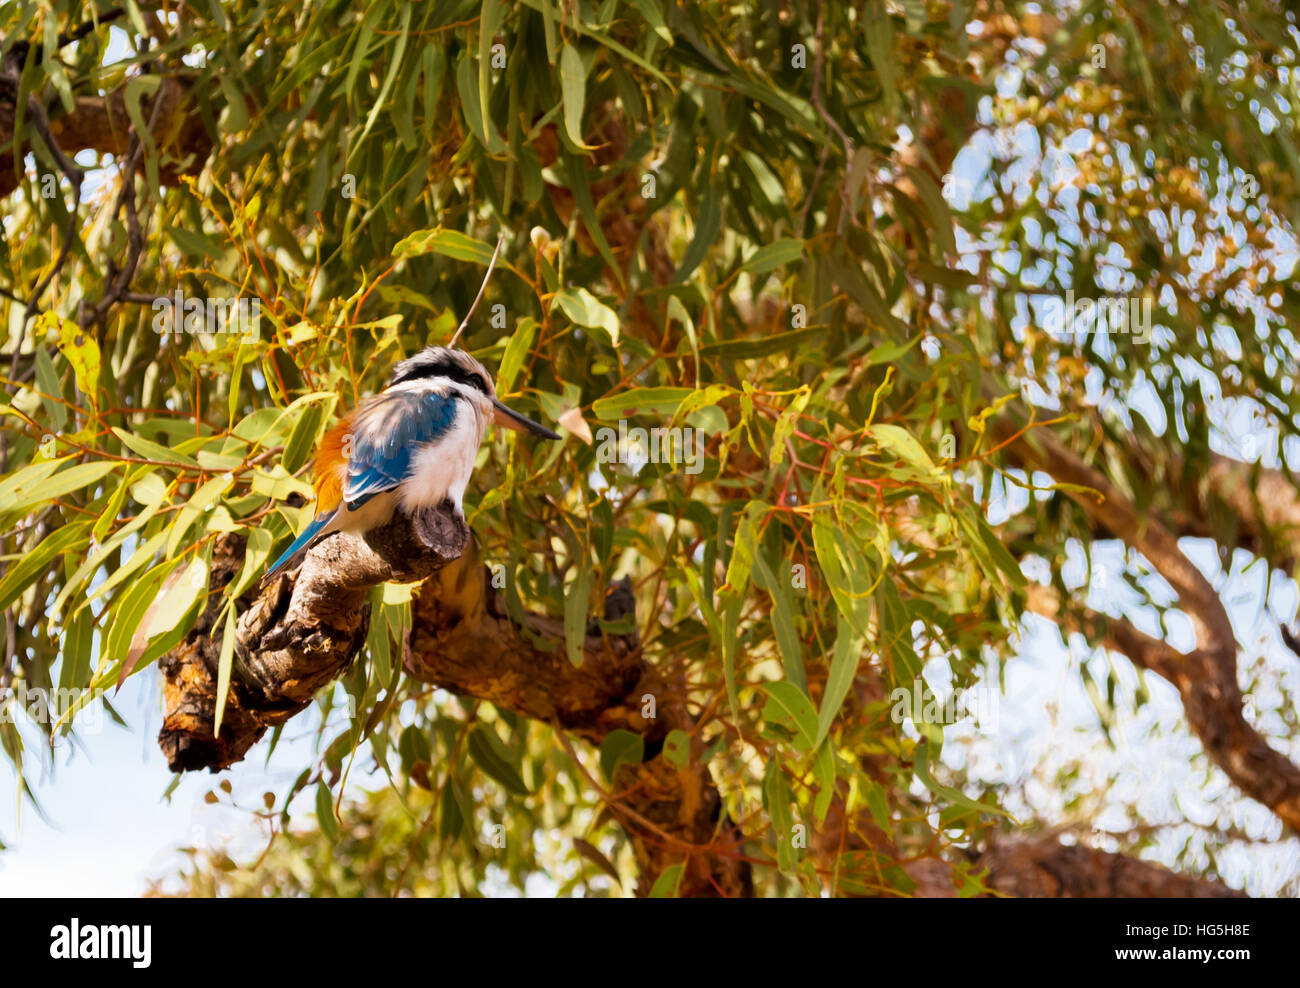 Australian Kookaburra oiseau debout sur un arbre Banque D'Images